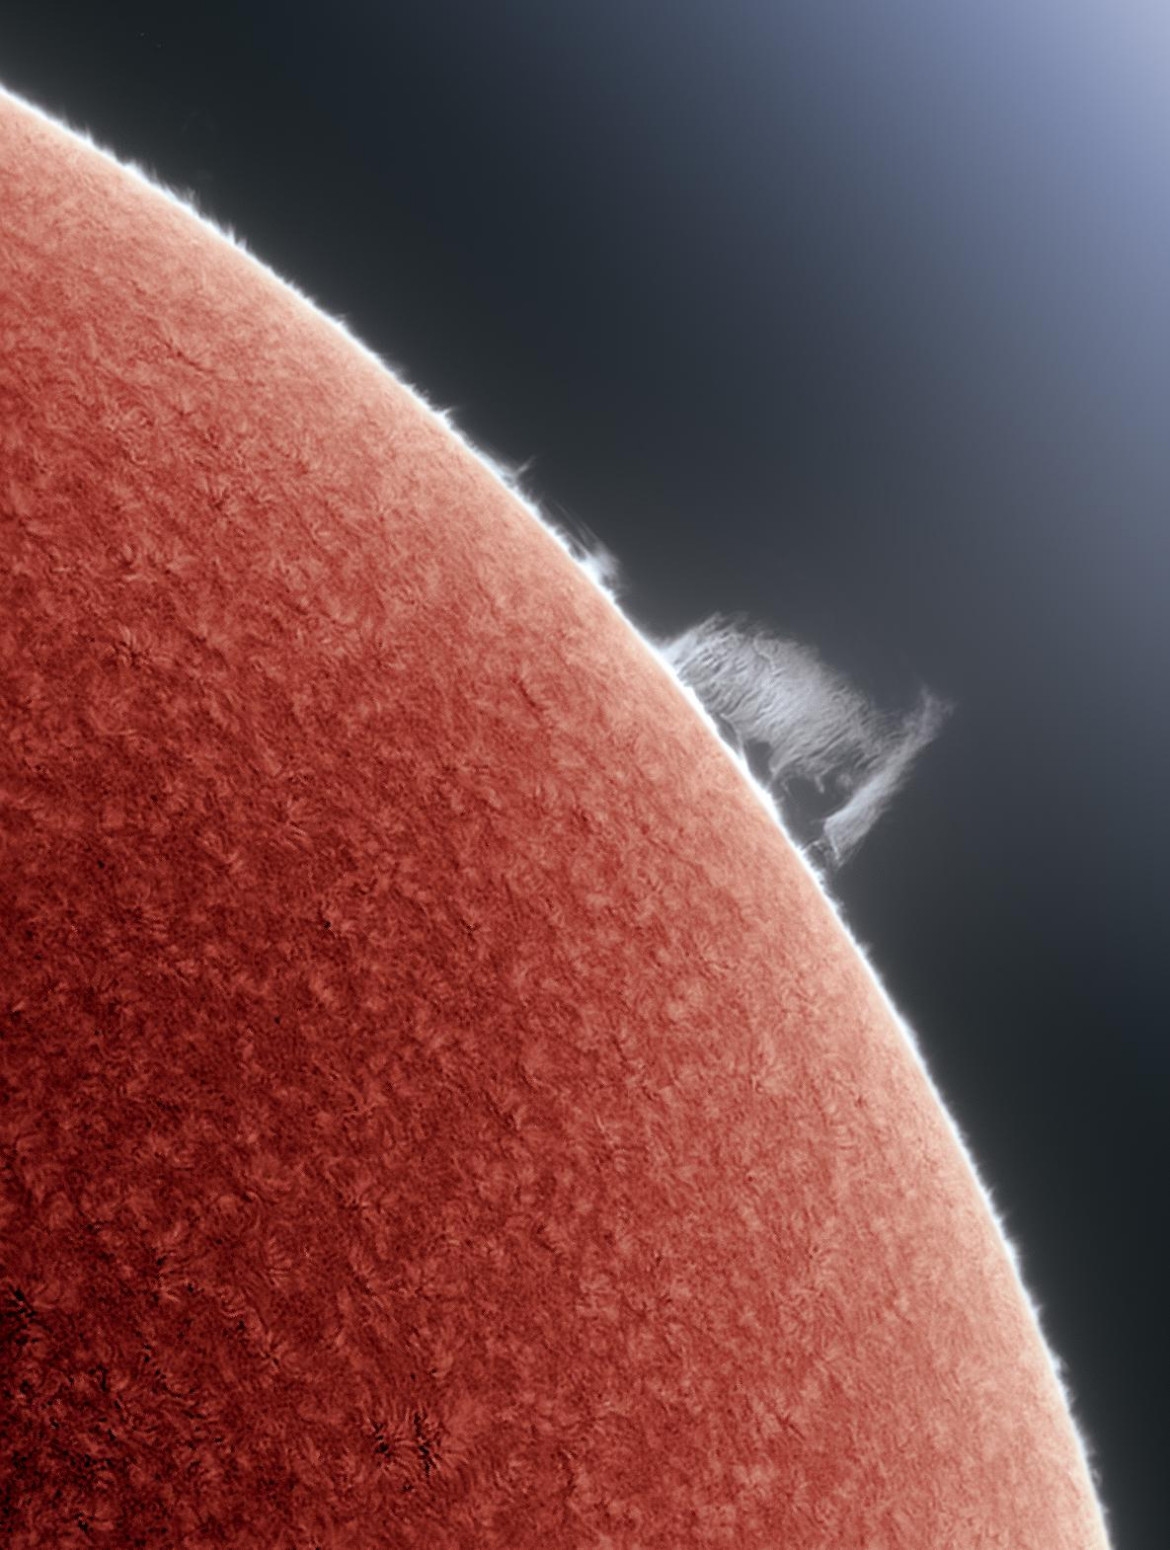 fot. Alan Friedman, "Curtain of Hydrogen", 3. miejsce w kat. Our Sun<br></br><br></br>Ta piękna, duża protuberancja ozdabiała Słońce przez kilka dni i została zarejestrowana w dobrych warunkach obserwacyjnych